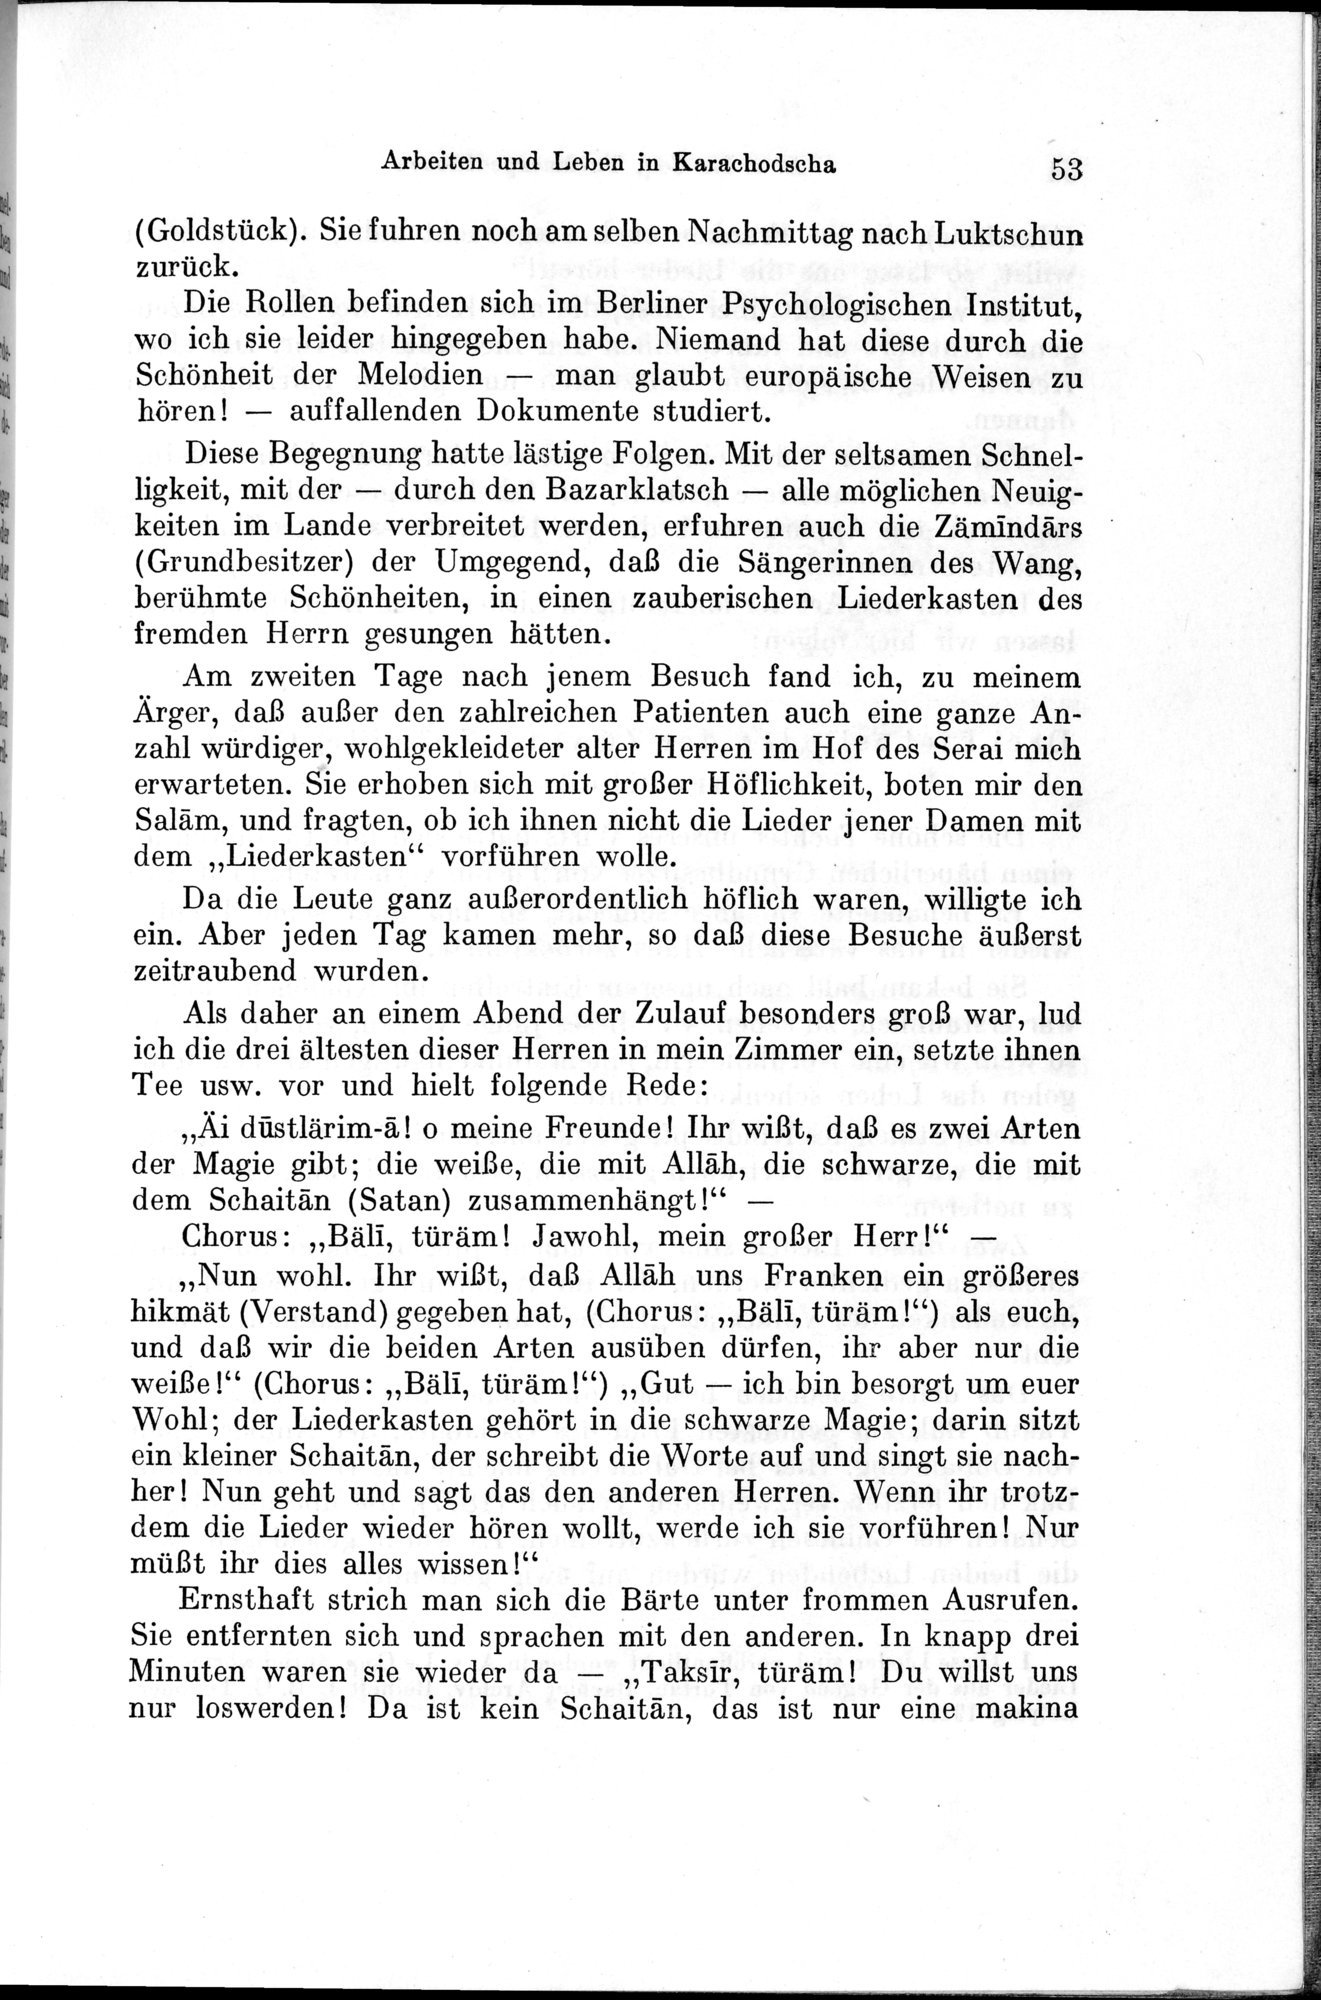 Auf Hellas Spuren in Ostturkistan : vol.1 / Page 81 (Grayscale High Resolution Image)